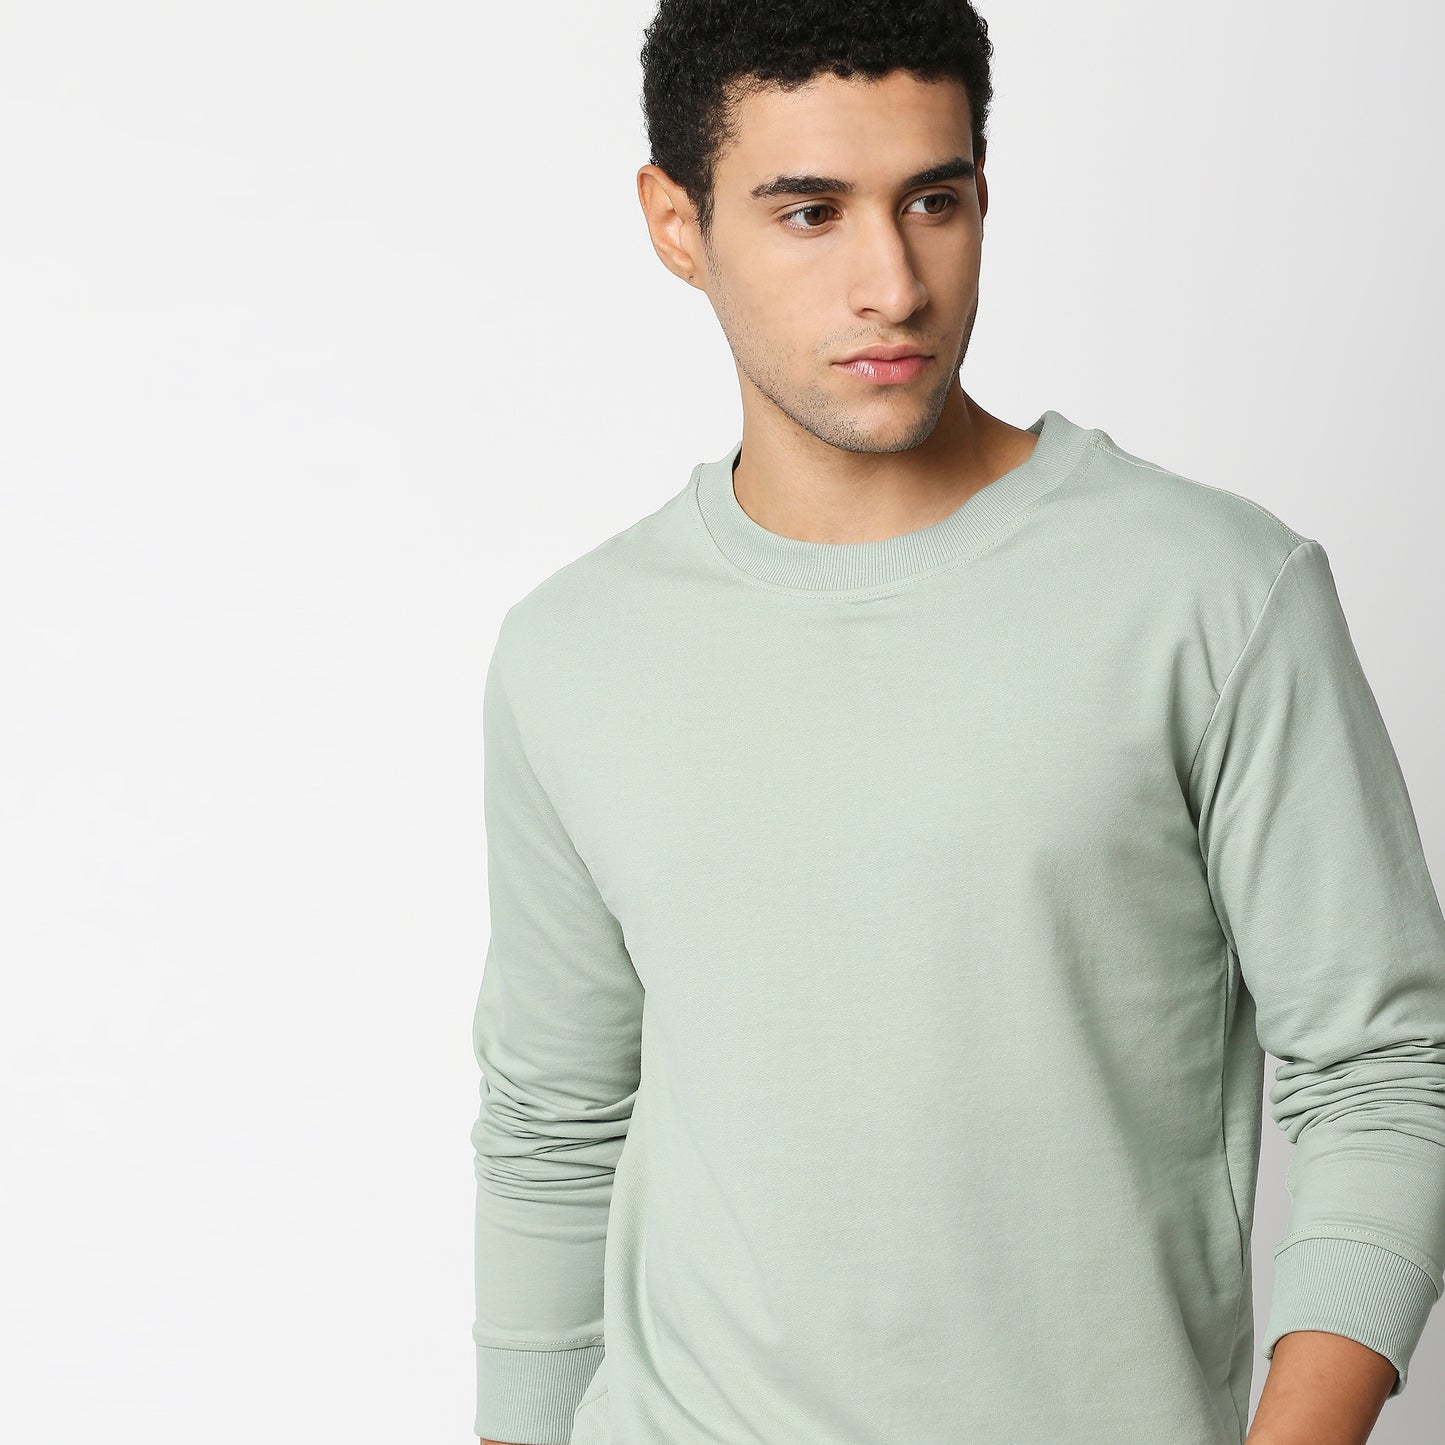 Fostino Vintage Pista Plain Full Sleeves Tshirt - Fostino Shirts & Tops